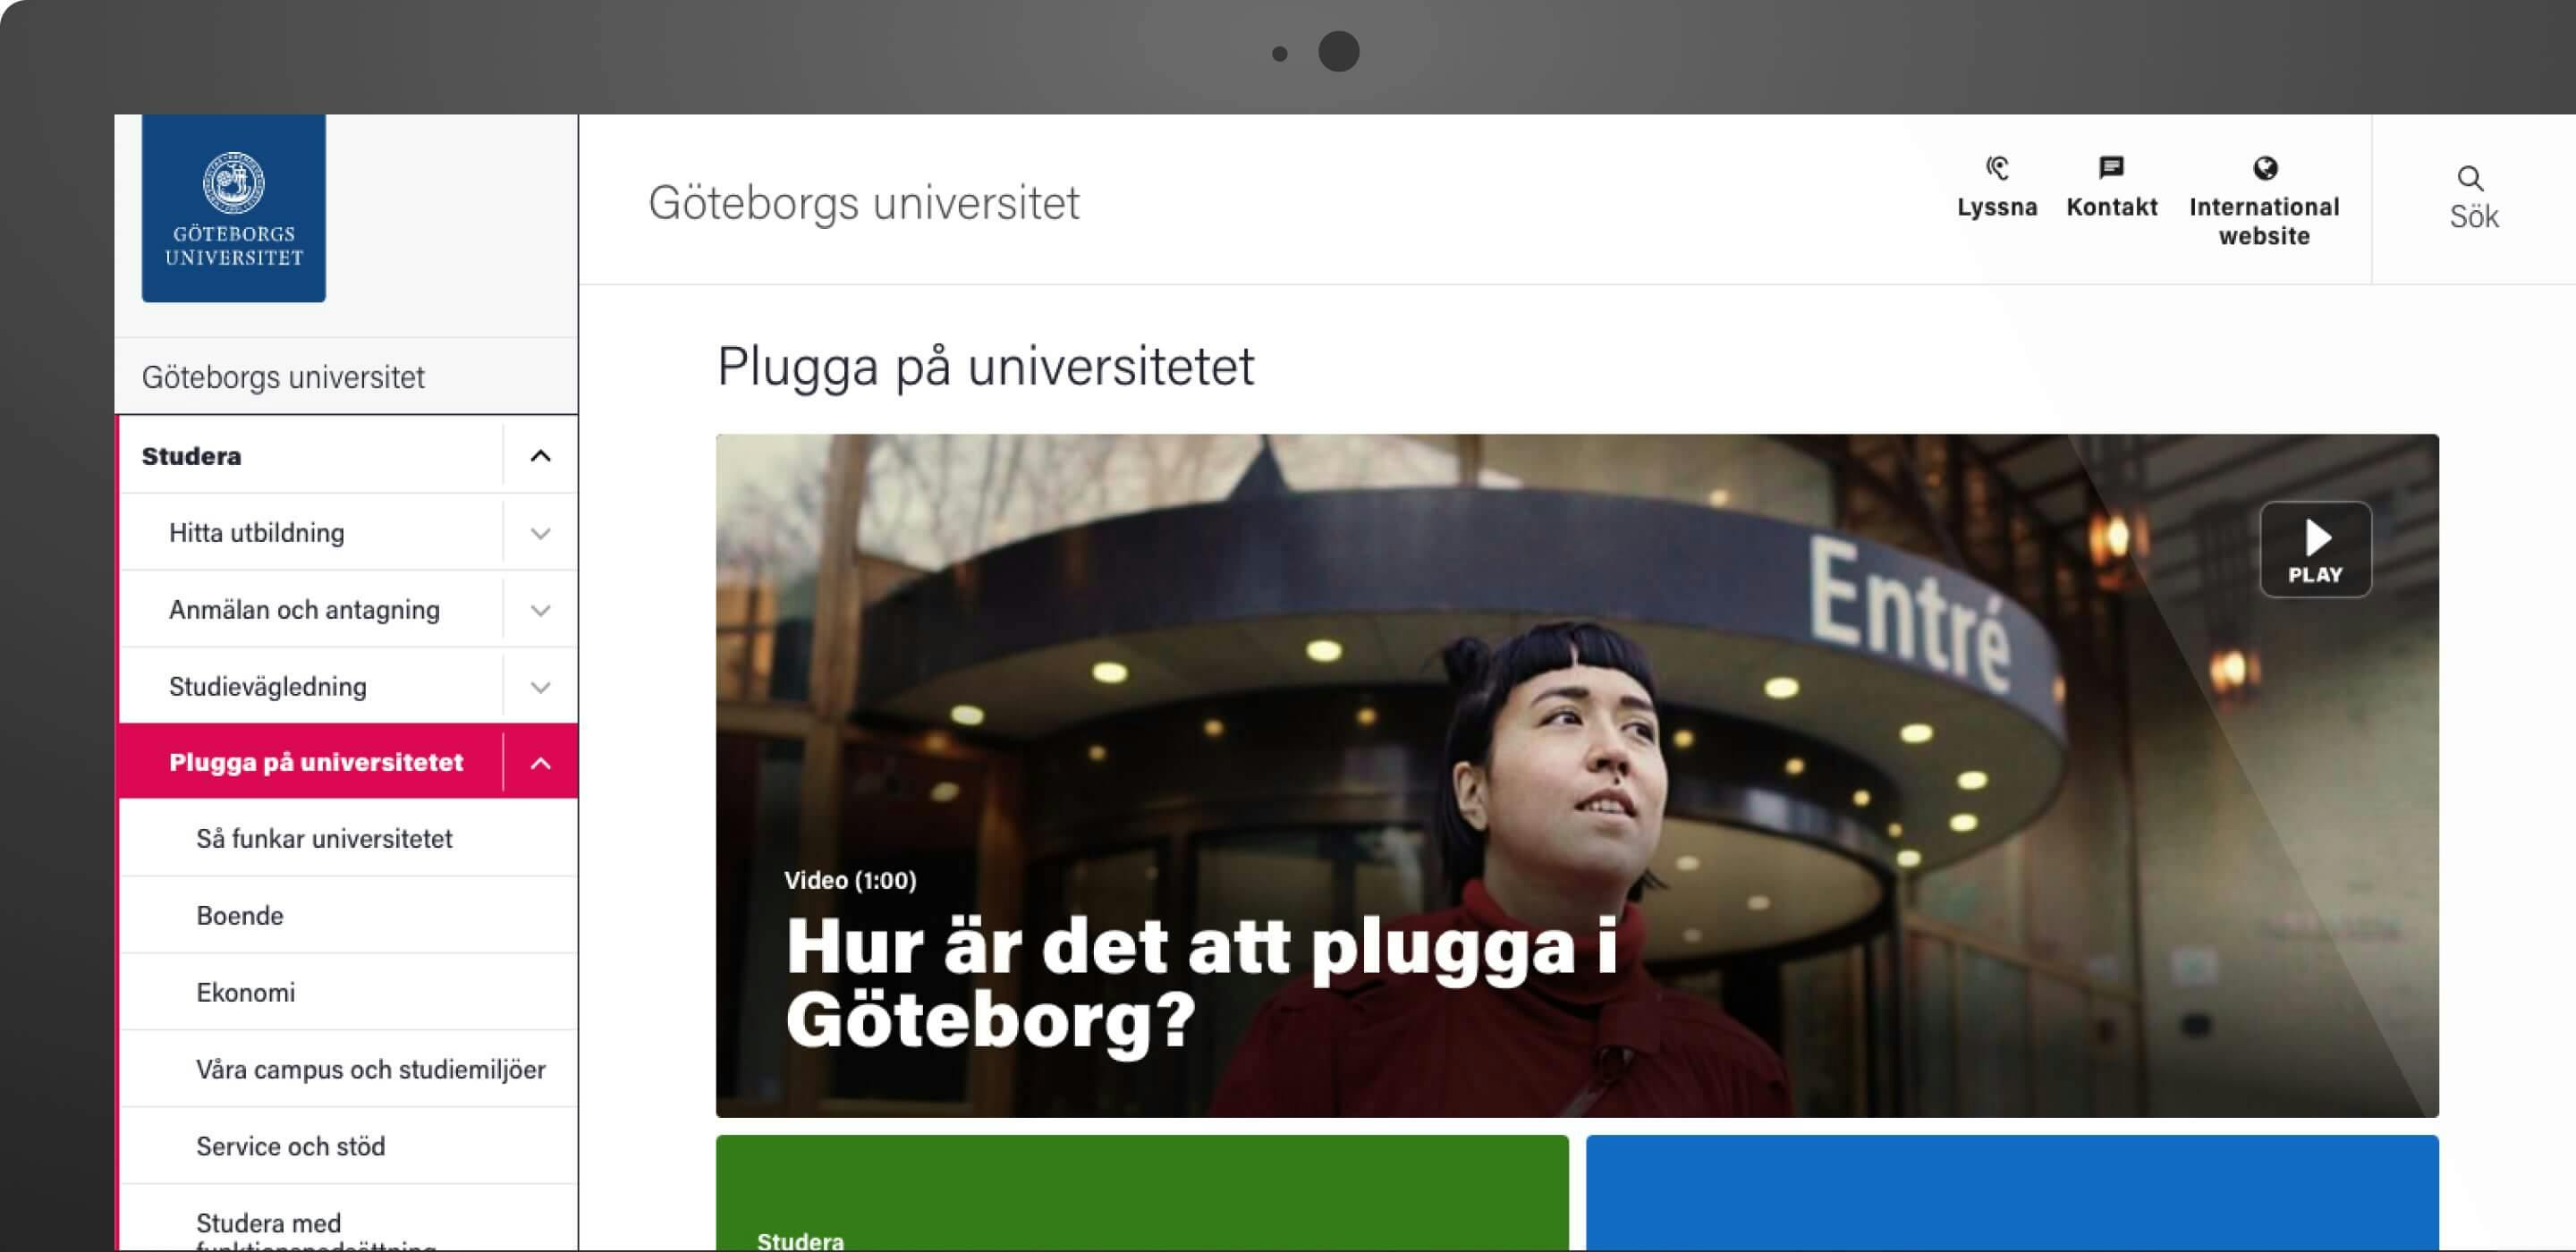 Skärmbild från Göteborgs universitets webbplats